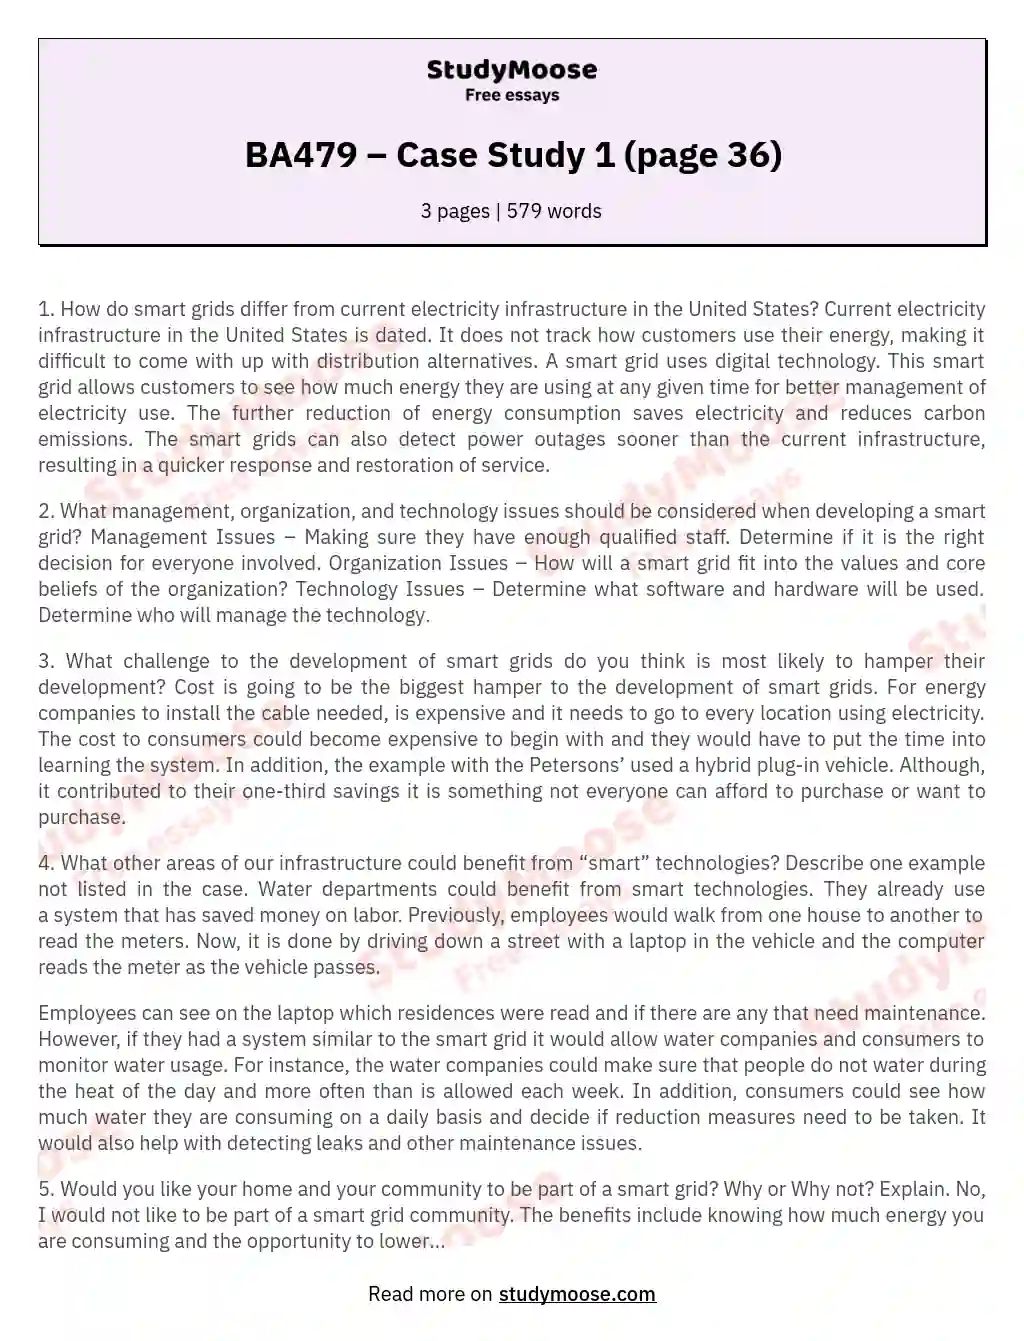 BA479 – Case Study 1 (page 36) essay